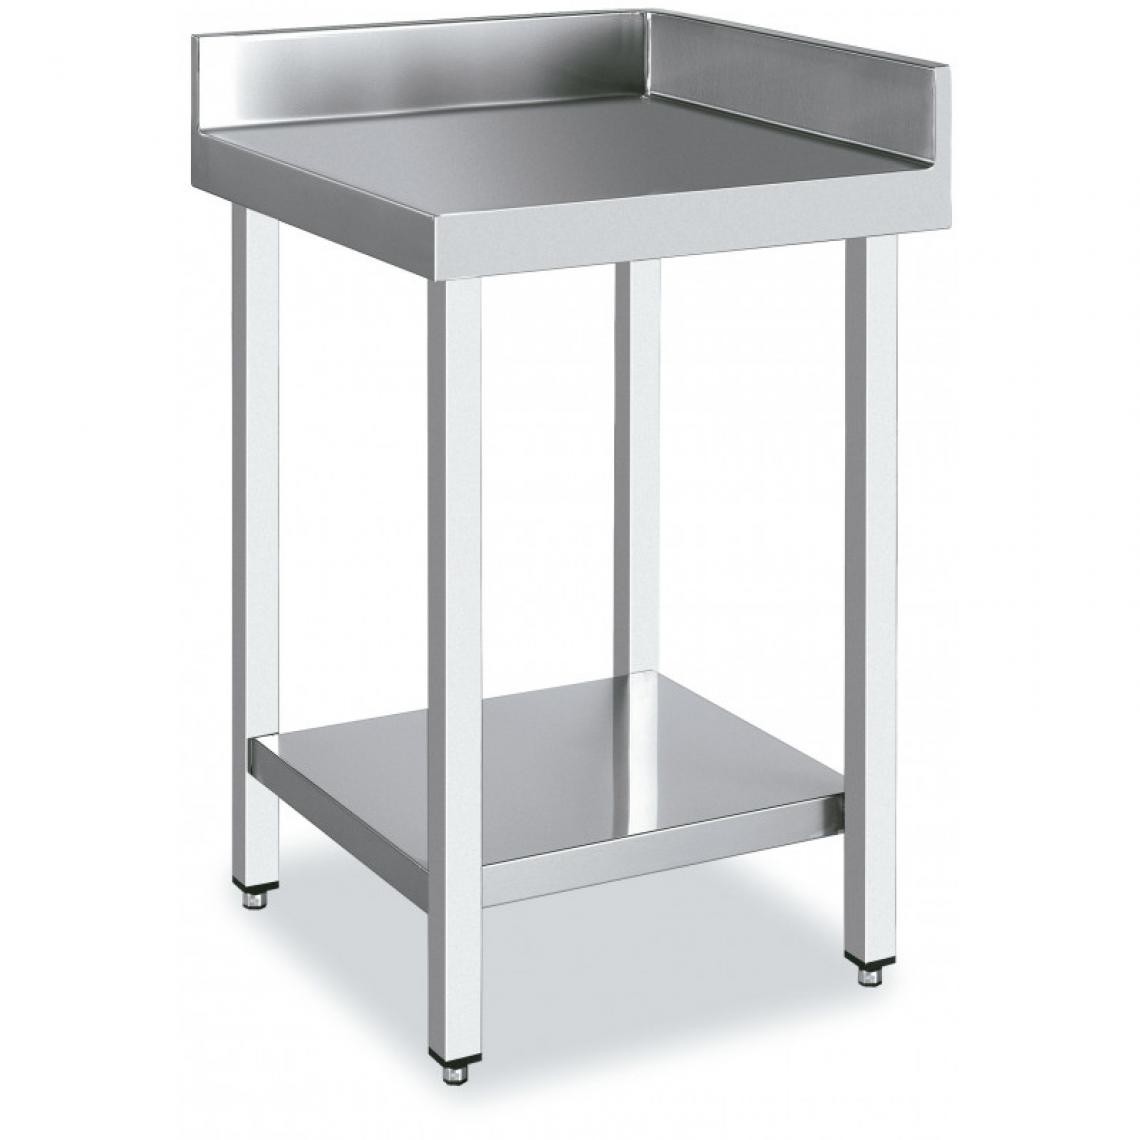 DISTFORM - Table d'Angle 90º Inox Avec une Etagère - Distform - Acier inoxydable700x600 - Tables à manger